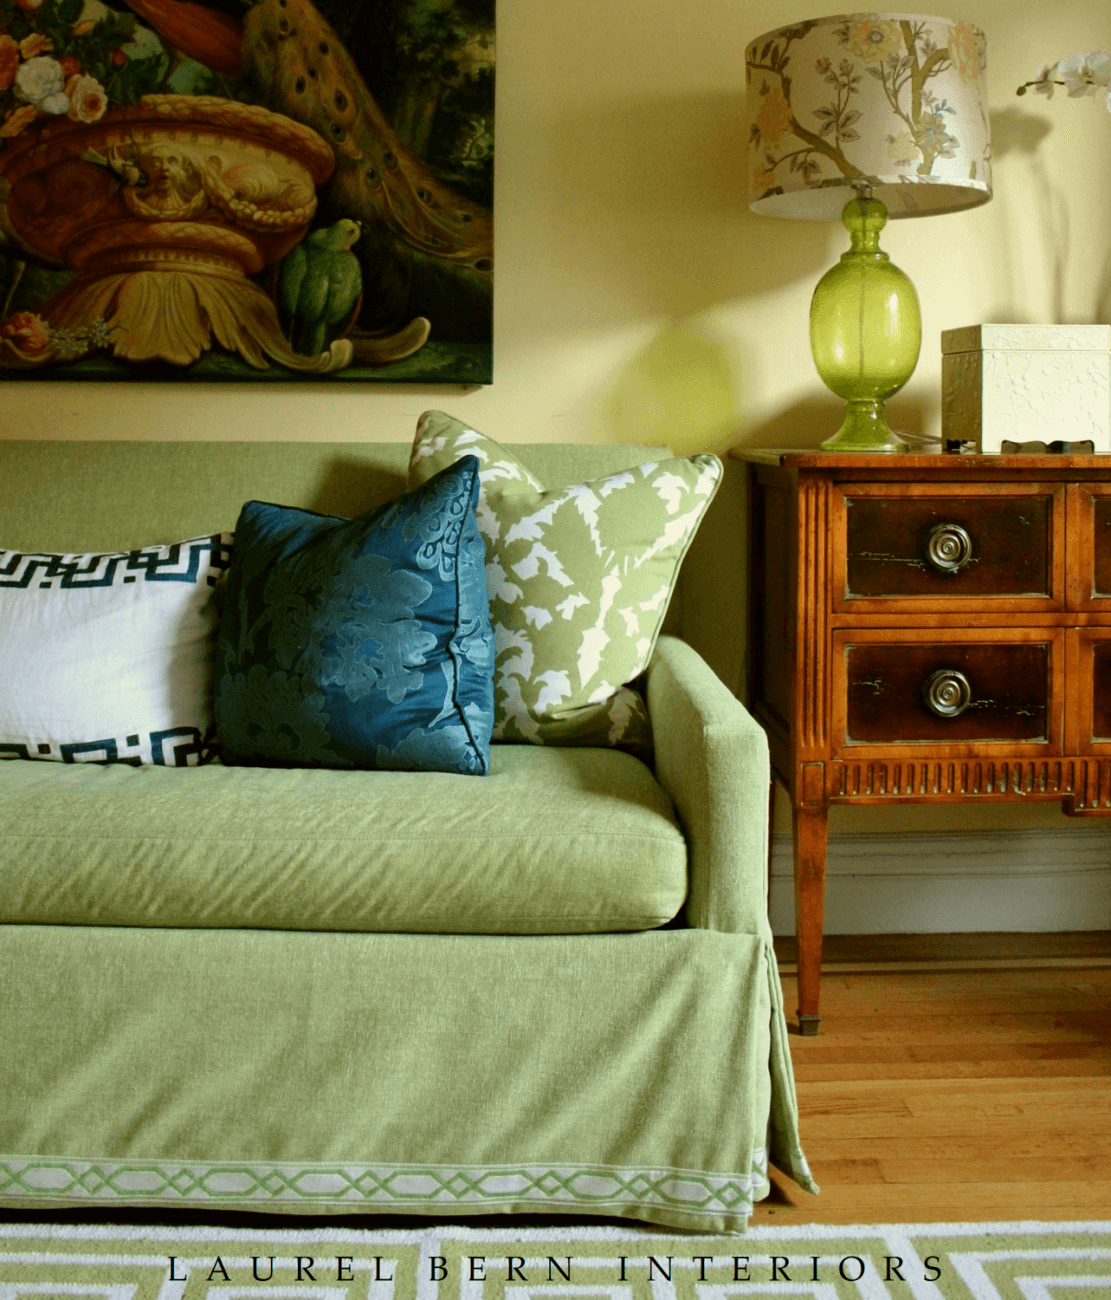 Laurel Bern Interiors Portfolio - colorful home decor vignettes